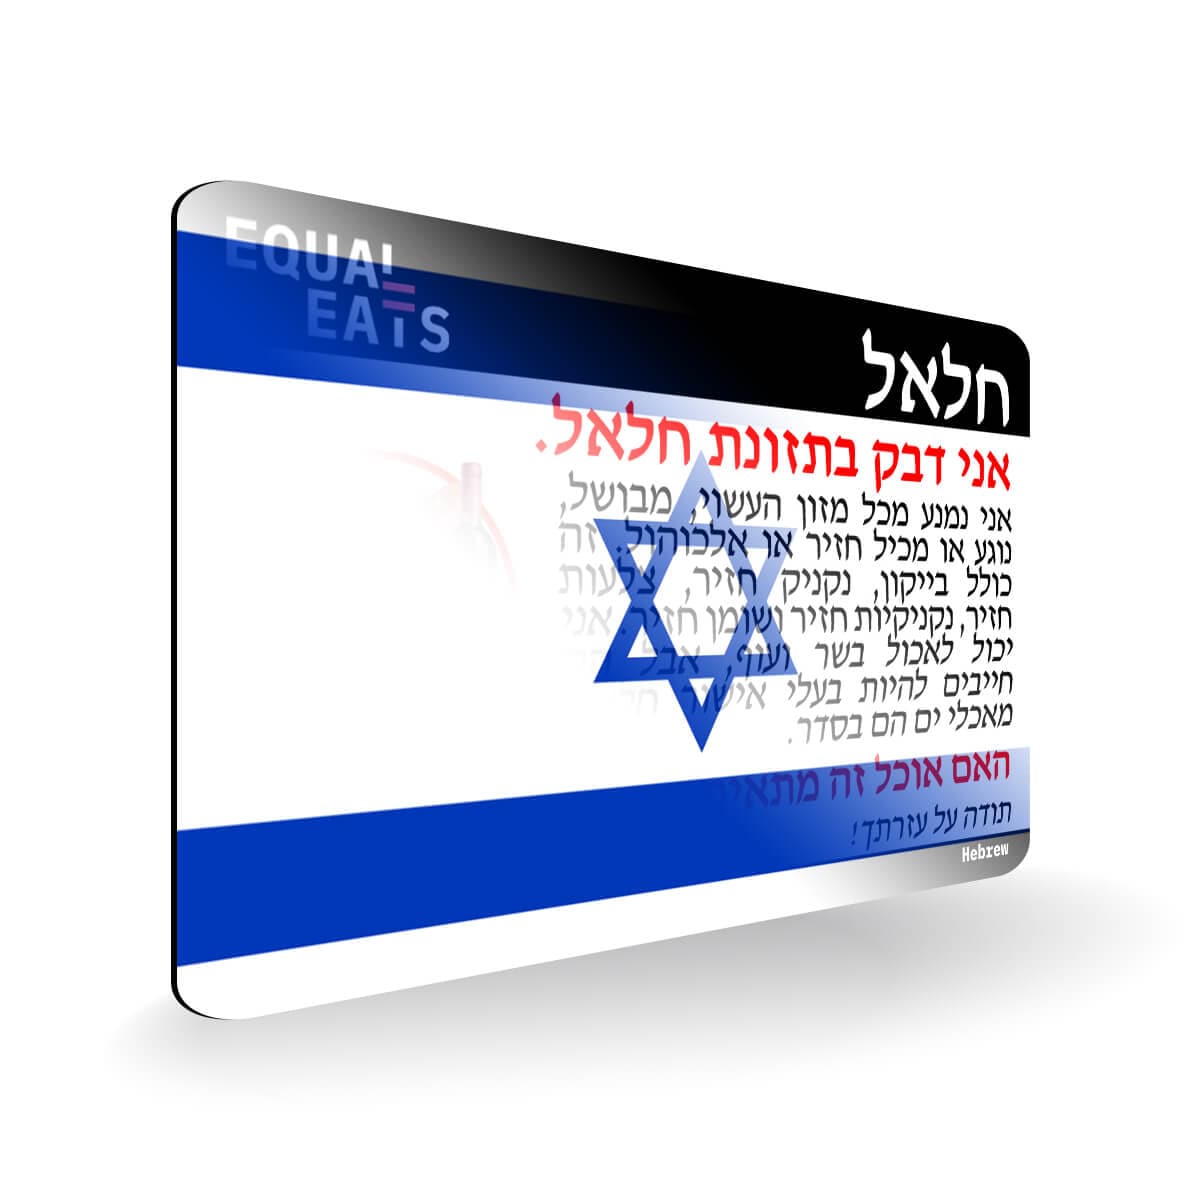 Halal Diet in Hebrew. Halal Food Card for Israel